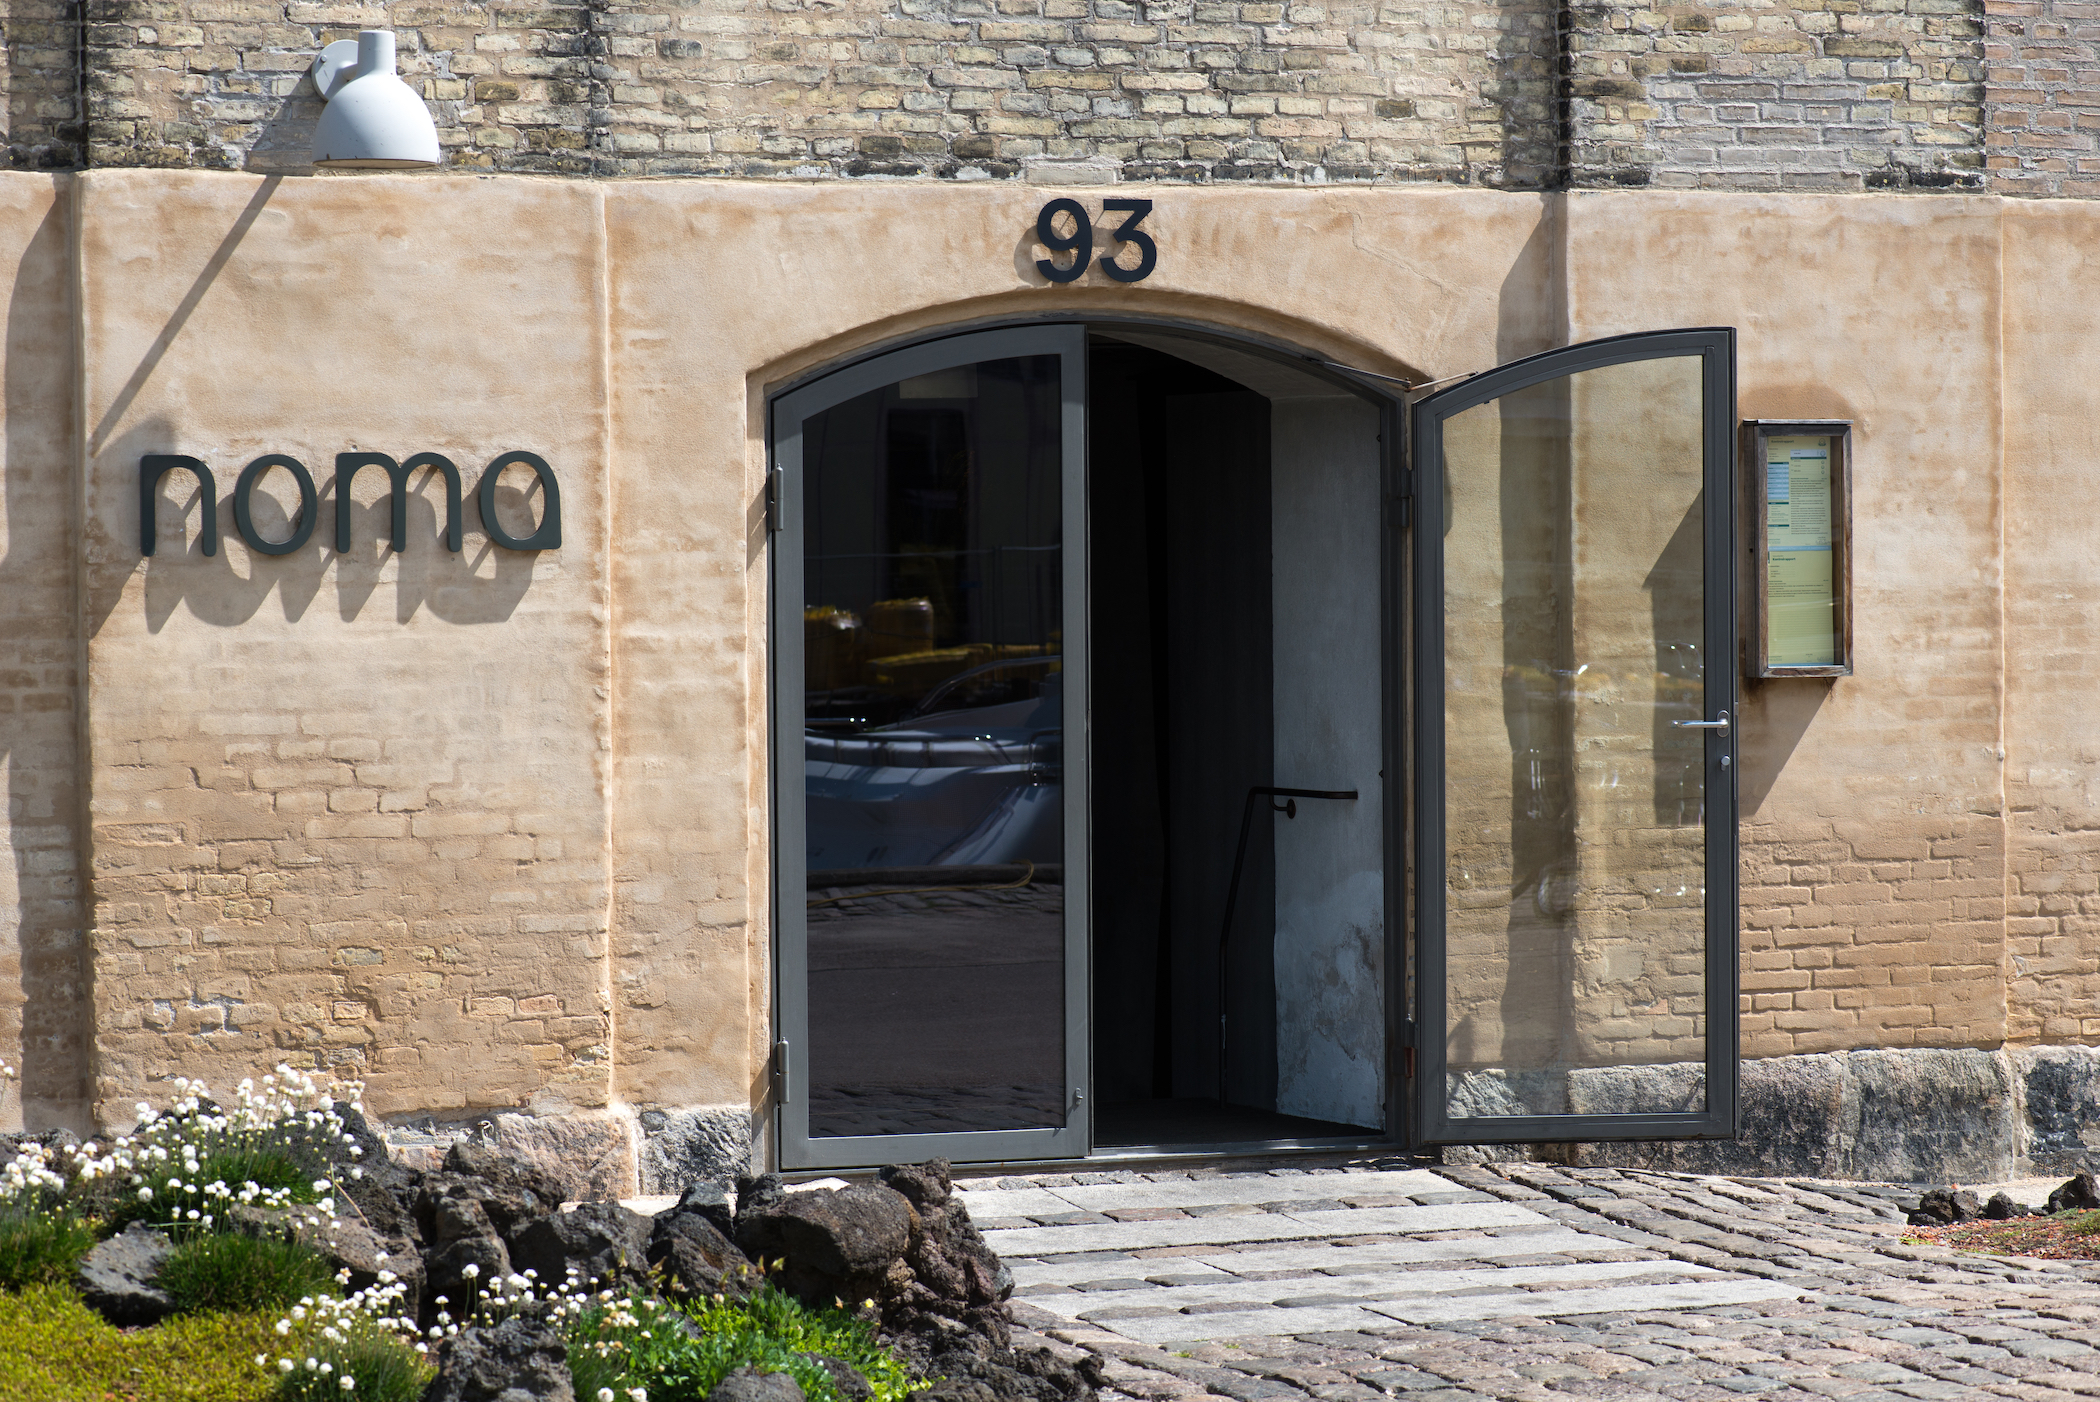 Noma Kööpenhaminassa sai vihdoin kolme Michelin-tähteä